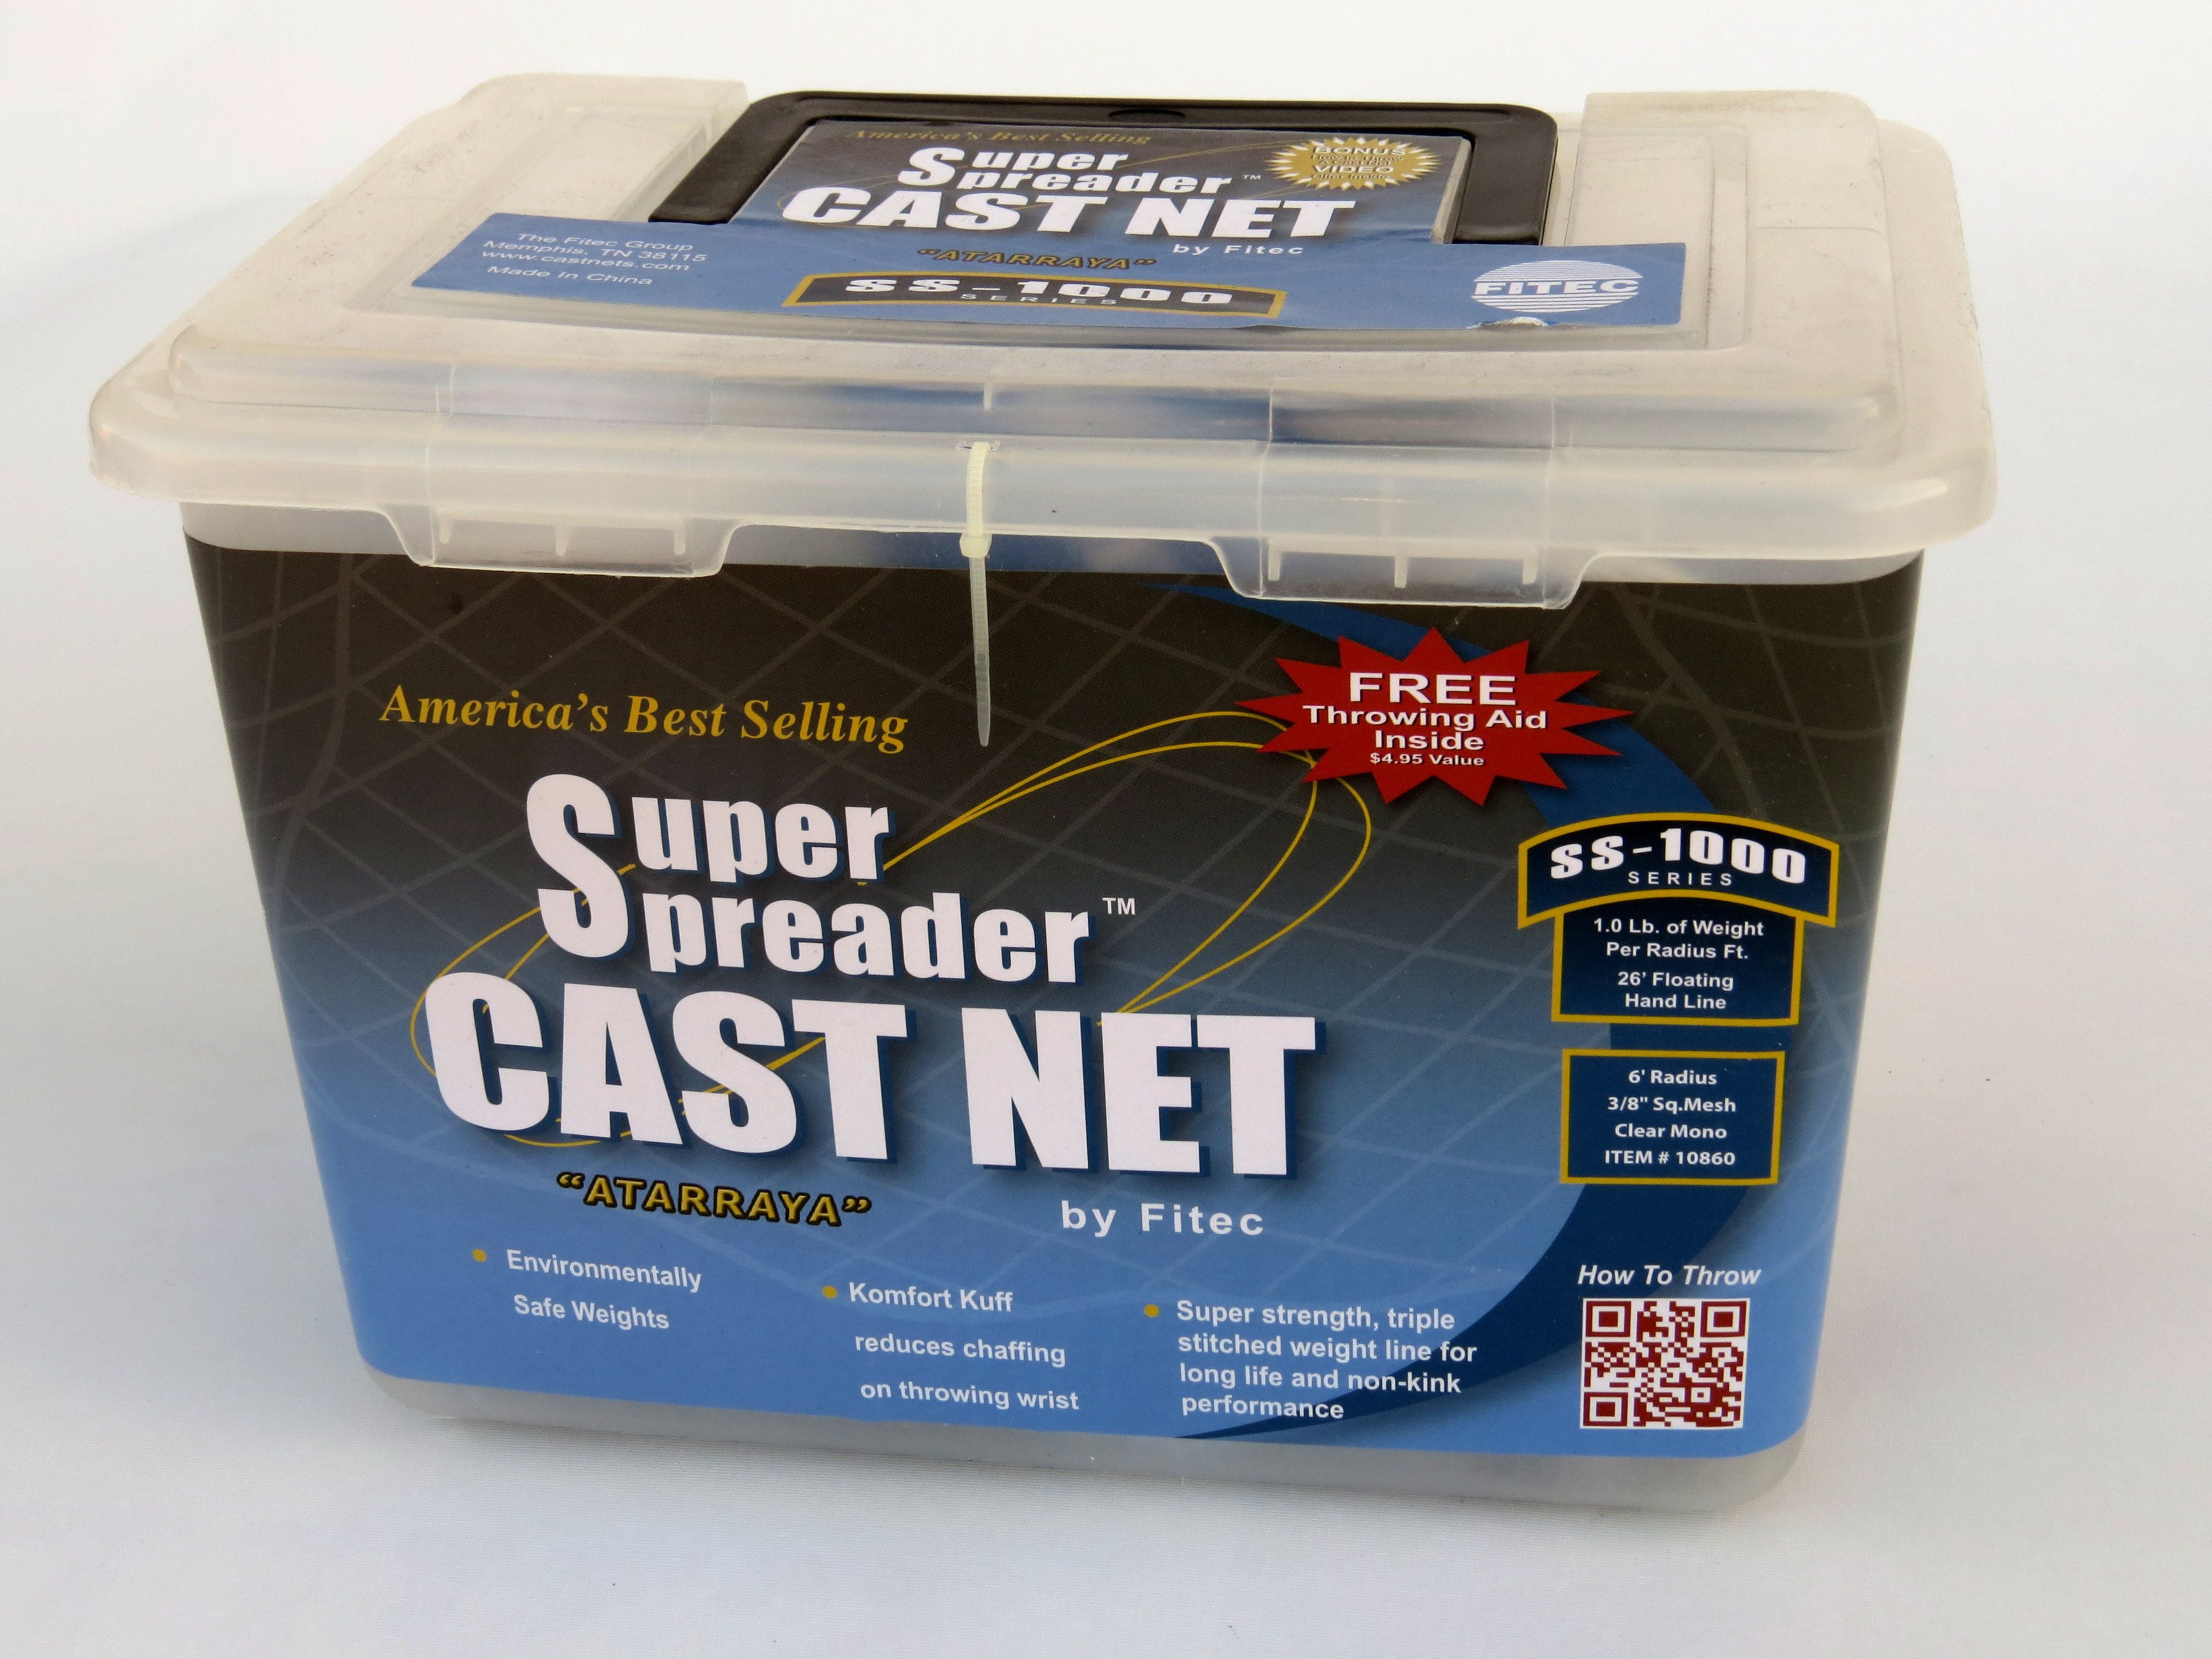 Fitec EZ1000 EZ Throw Super Spreader Cast Net, 5' x 3/8, Clear, 1 lb wt